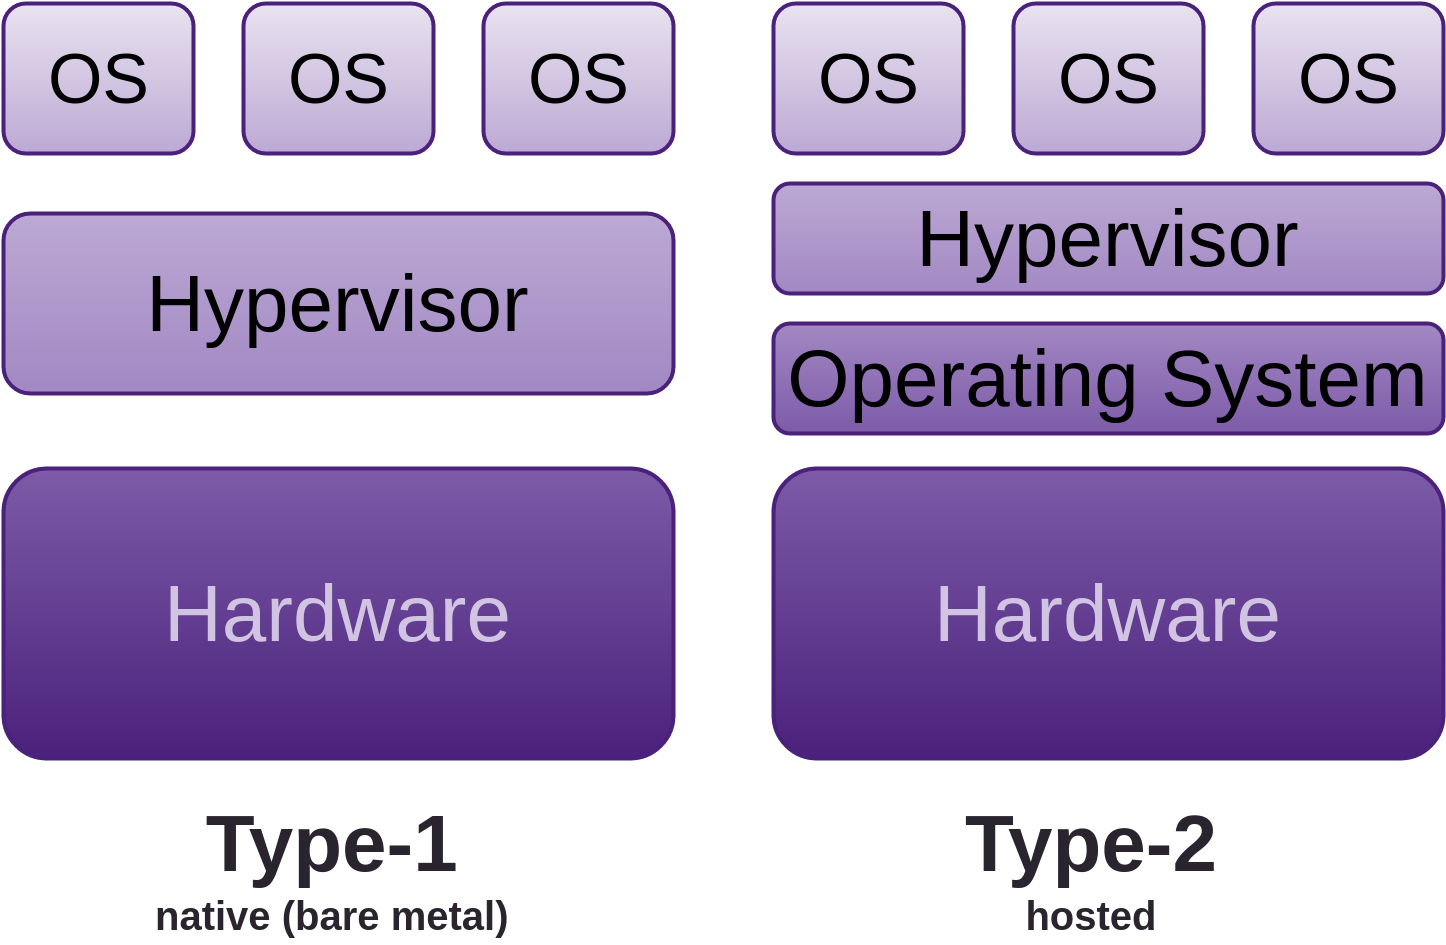 Types of Hypervisor